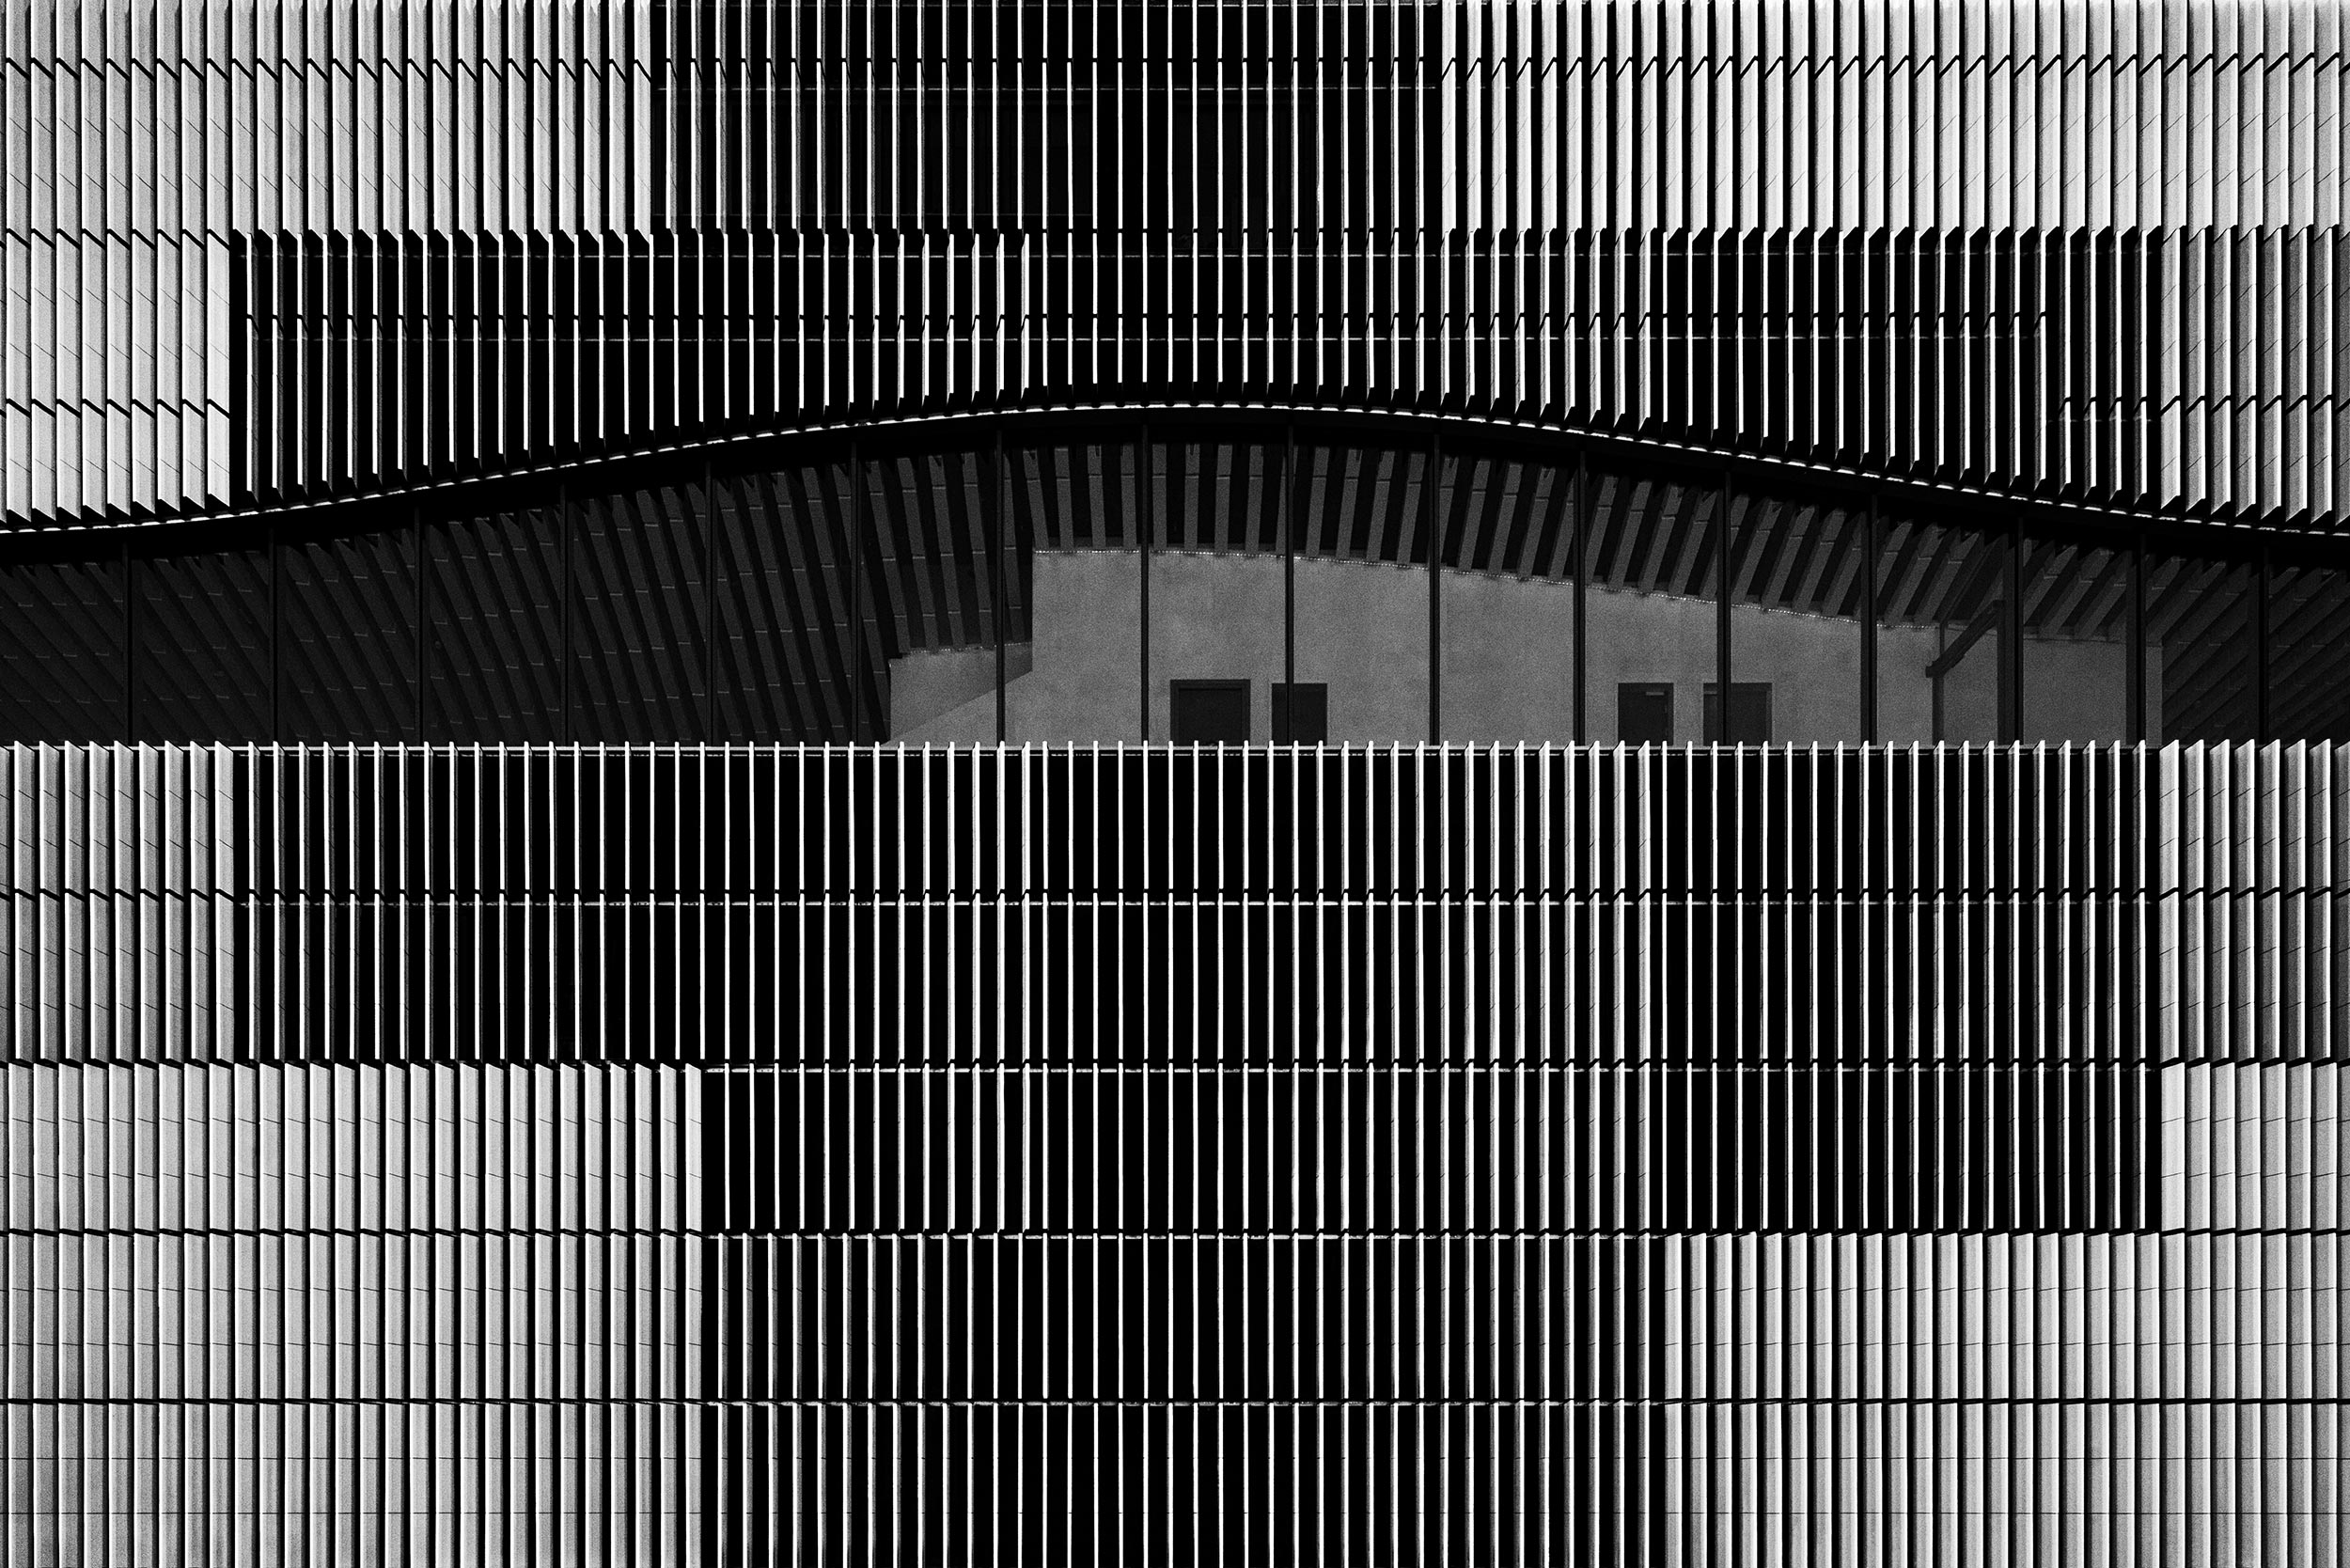 Paracelsus-Bad, Salzburg, Architecture Photography, Black & White